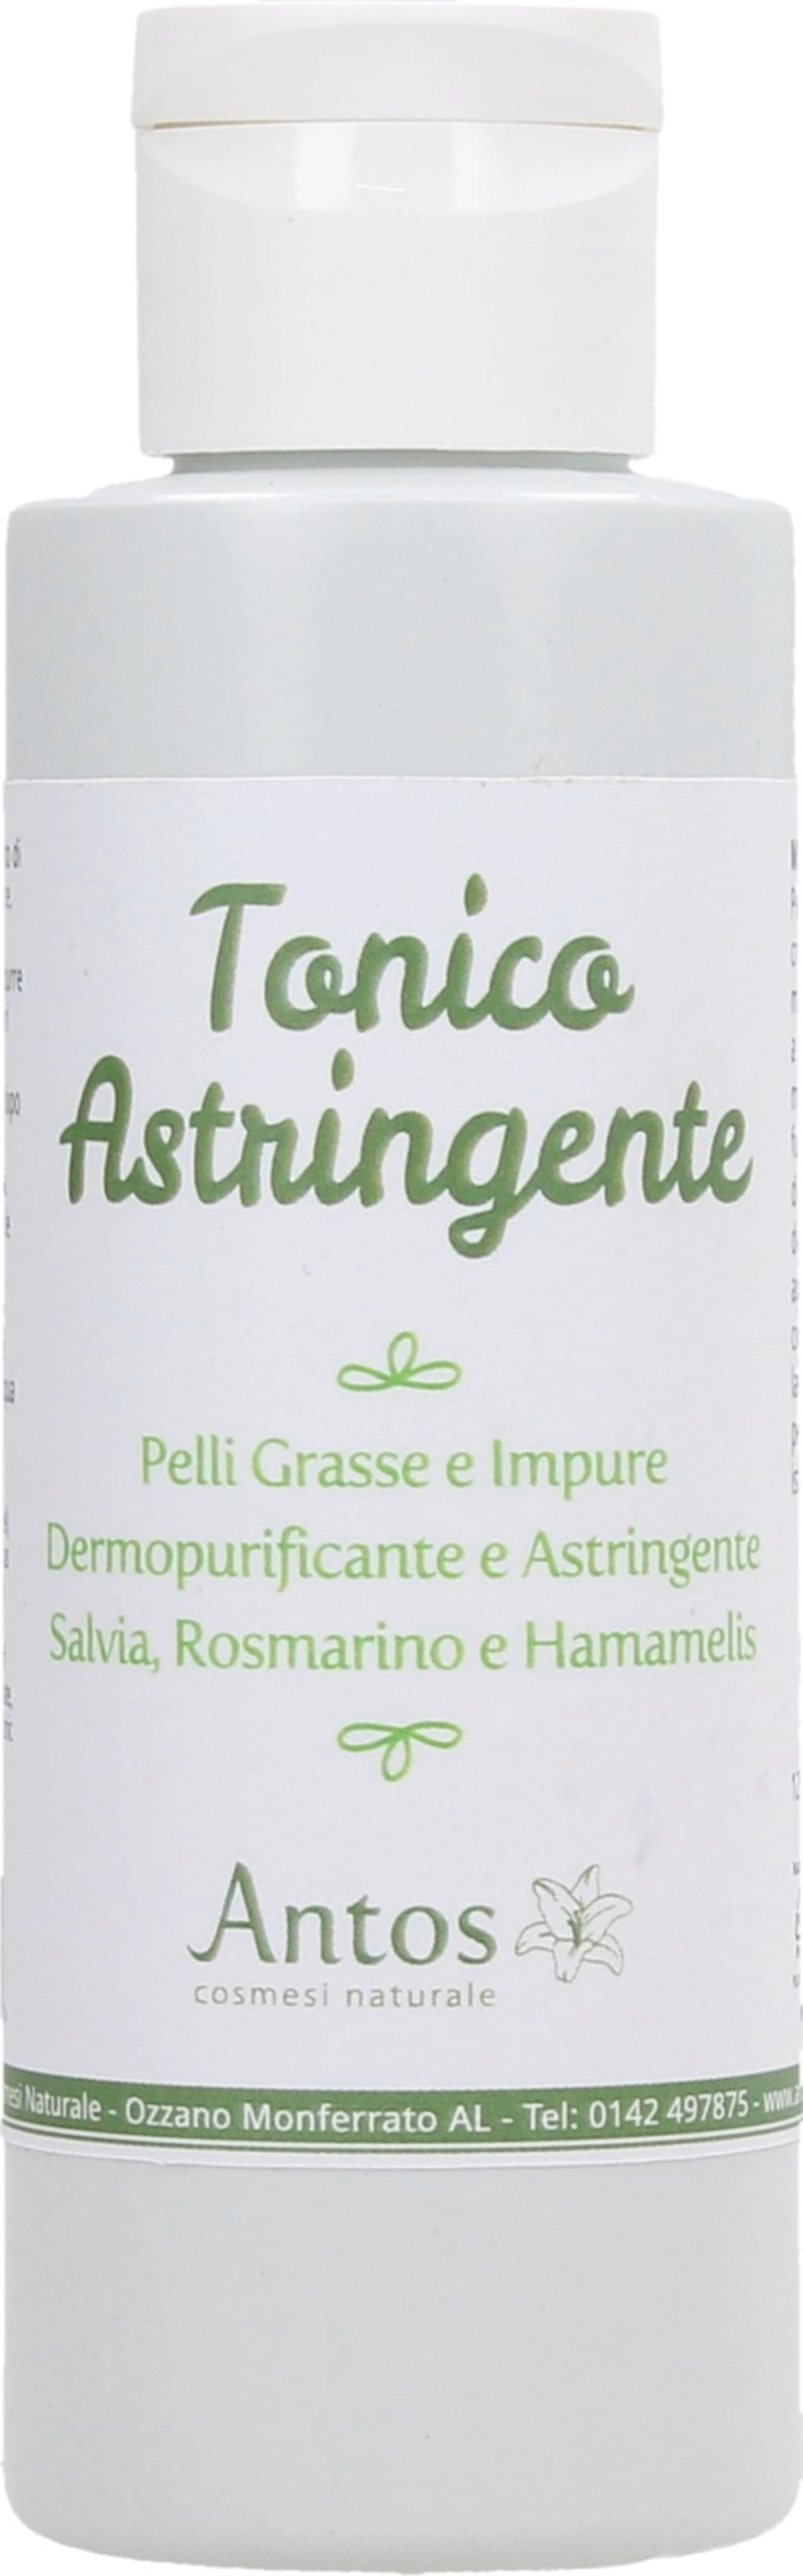 Antos Lotion Tonique Astringente - 125 ml